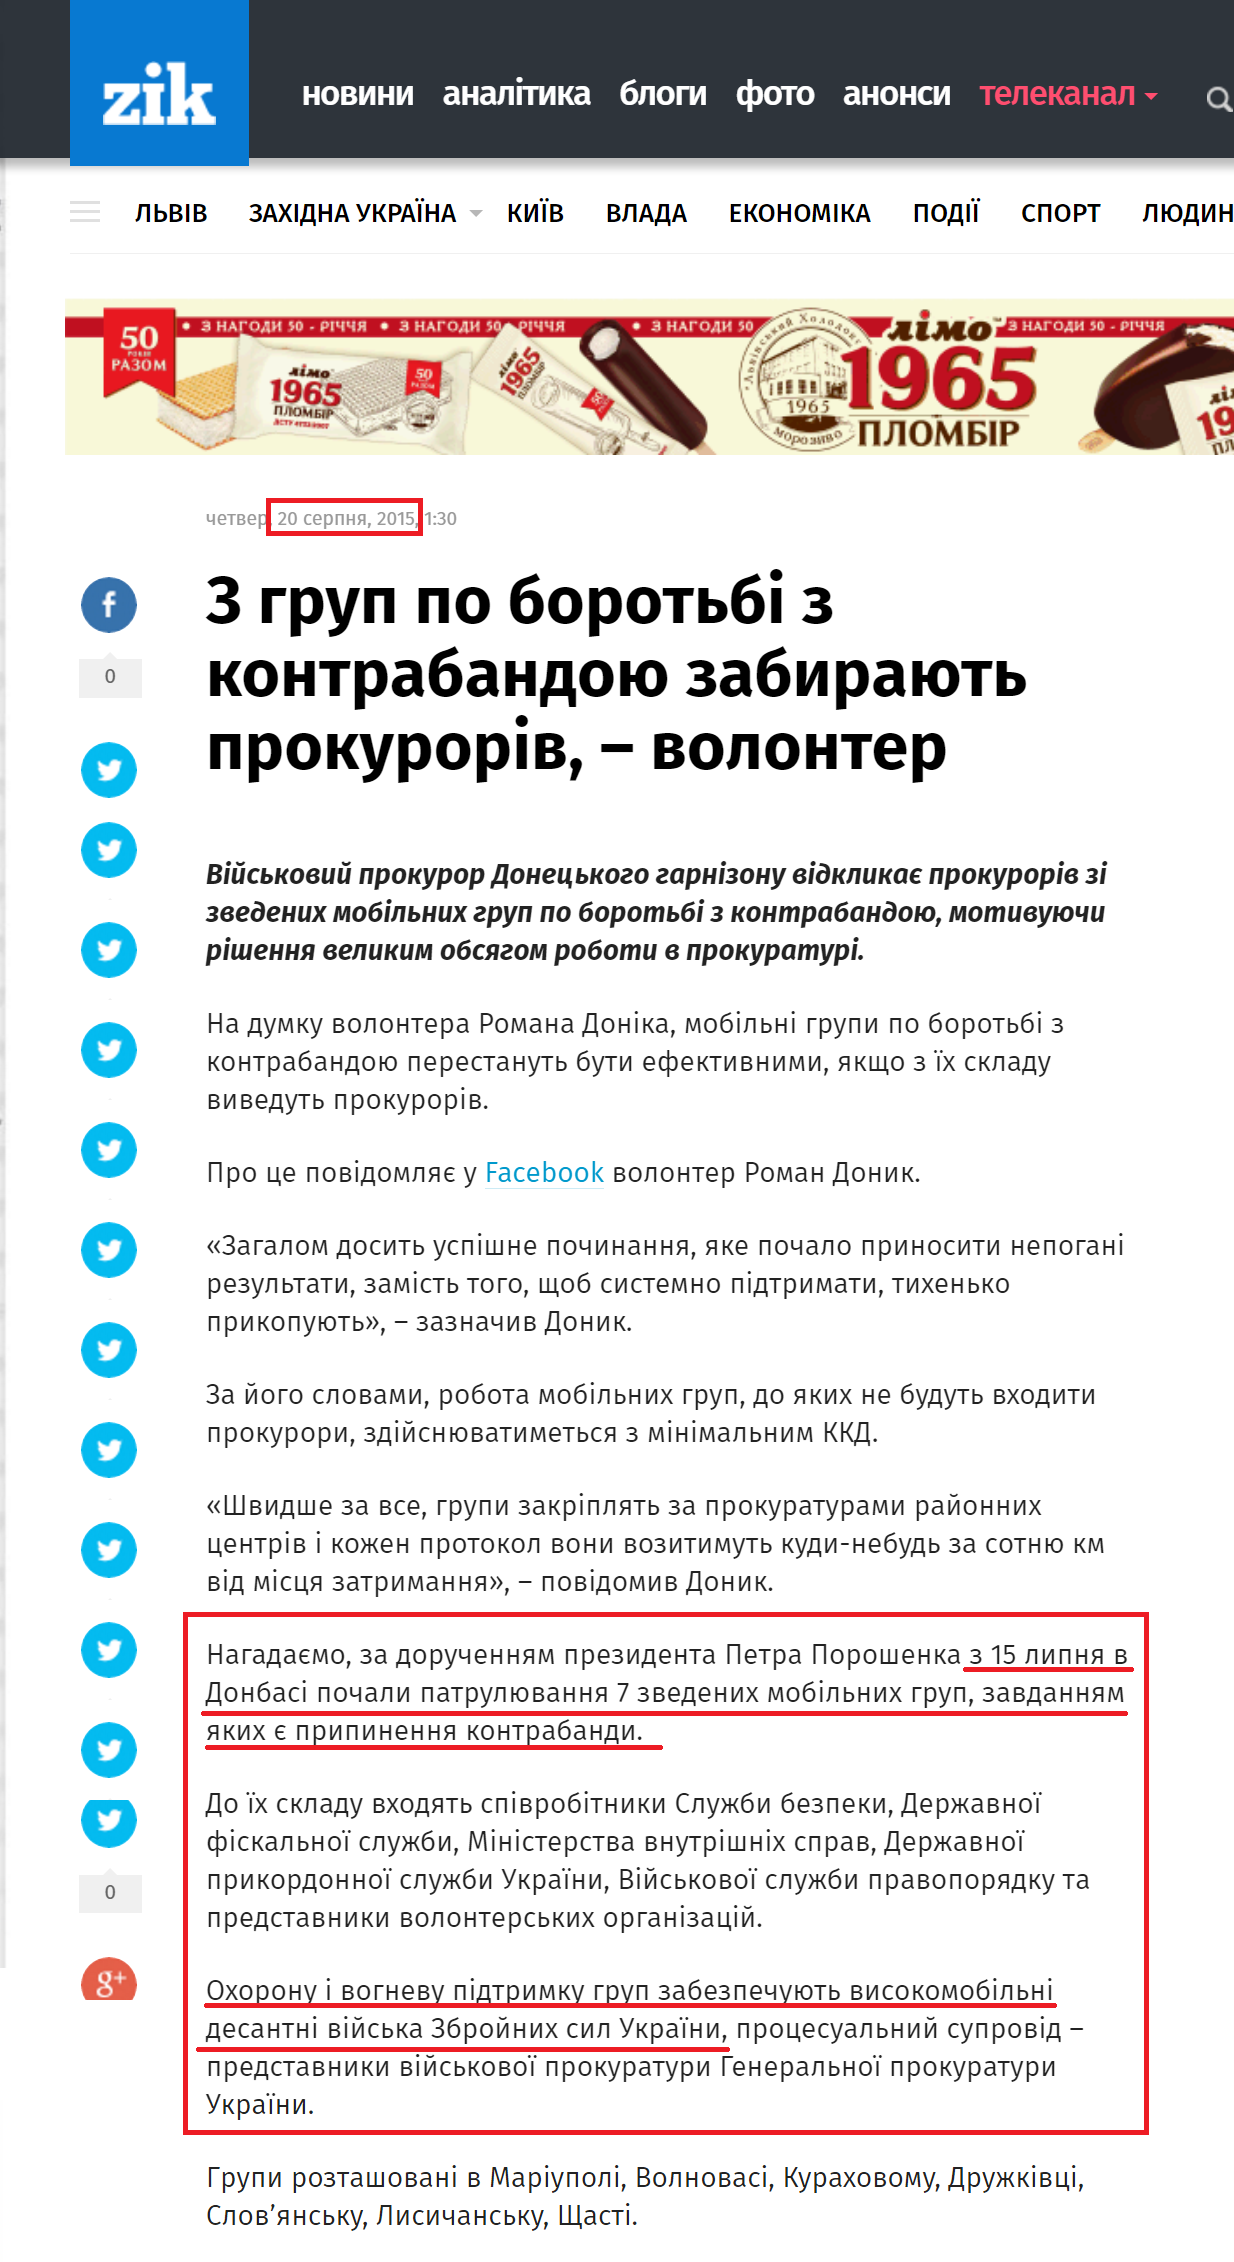 http://zik.ua/news/2015/08/20/z_grup_po_borotbi_z_kontrabandoyu_zabyrayut_prokuroriv__volonter_617675